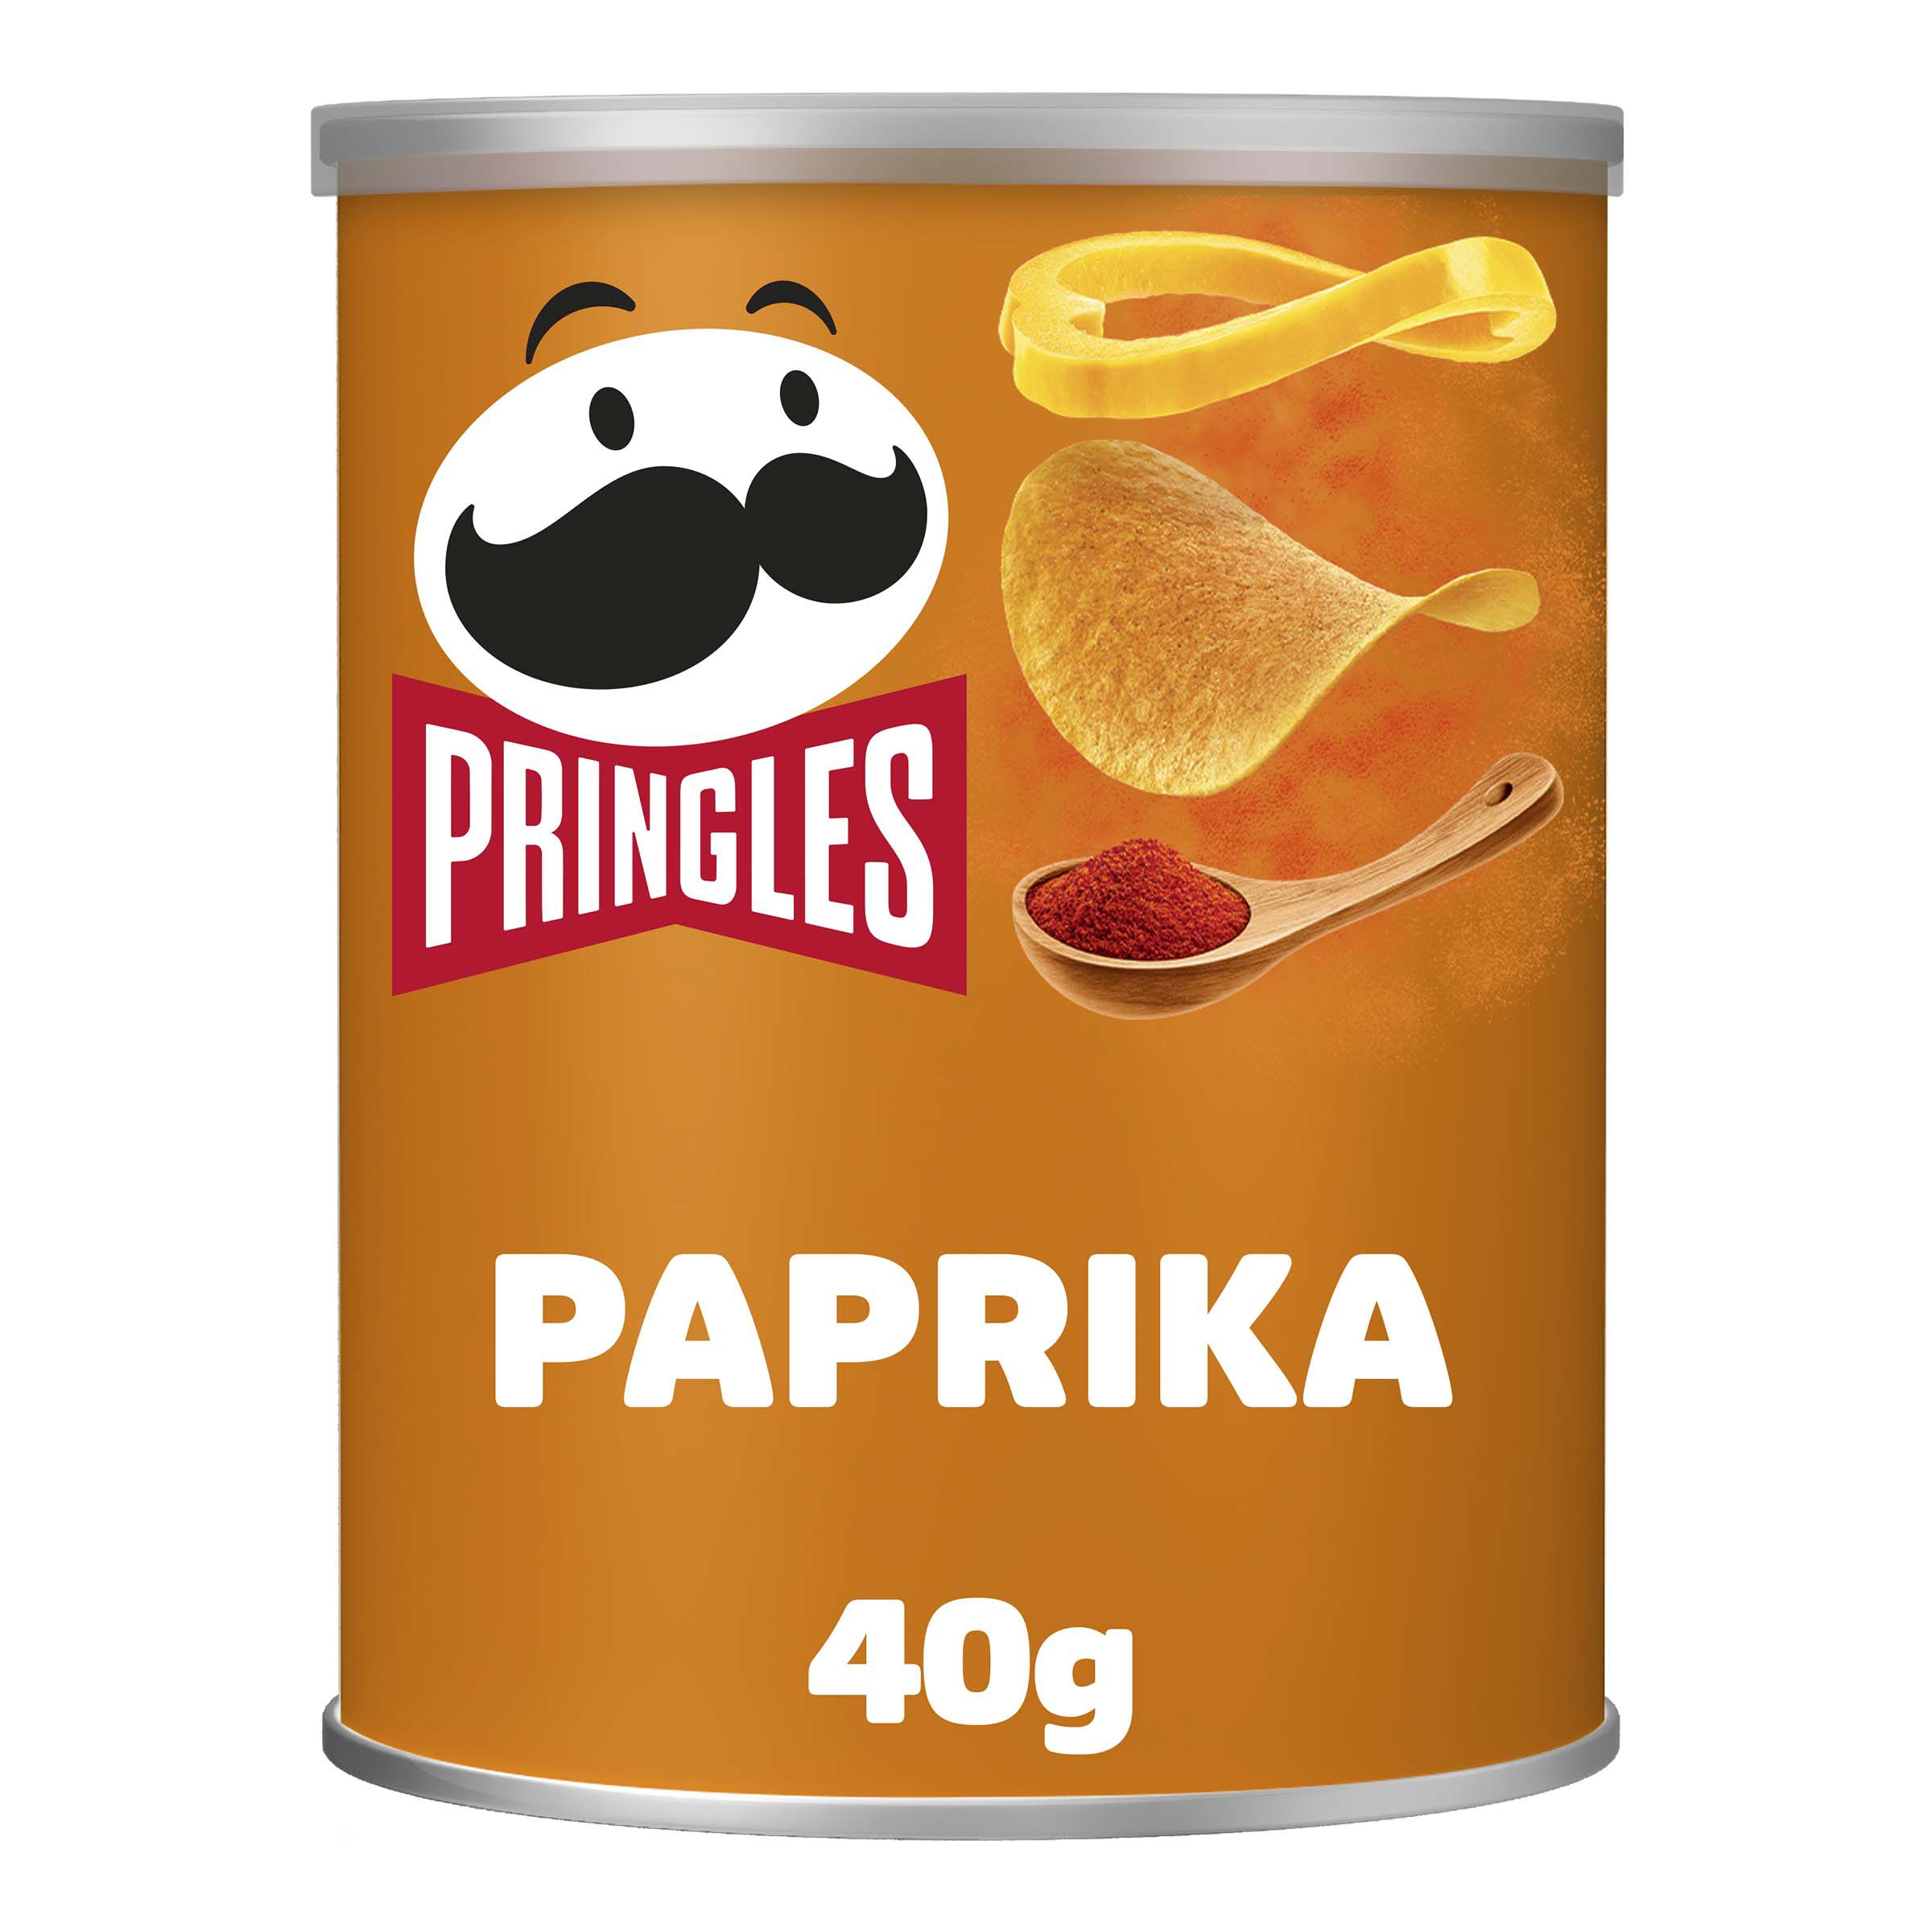 Pringles Paprika Flavour Crisps - Pringles UK | Kellogg's